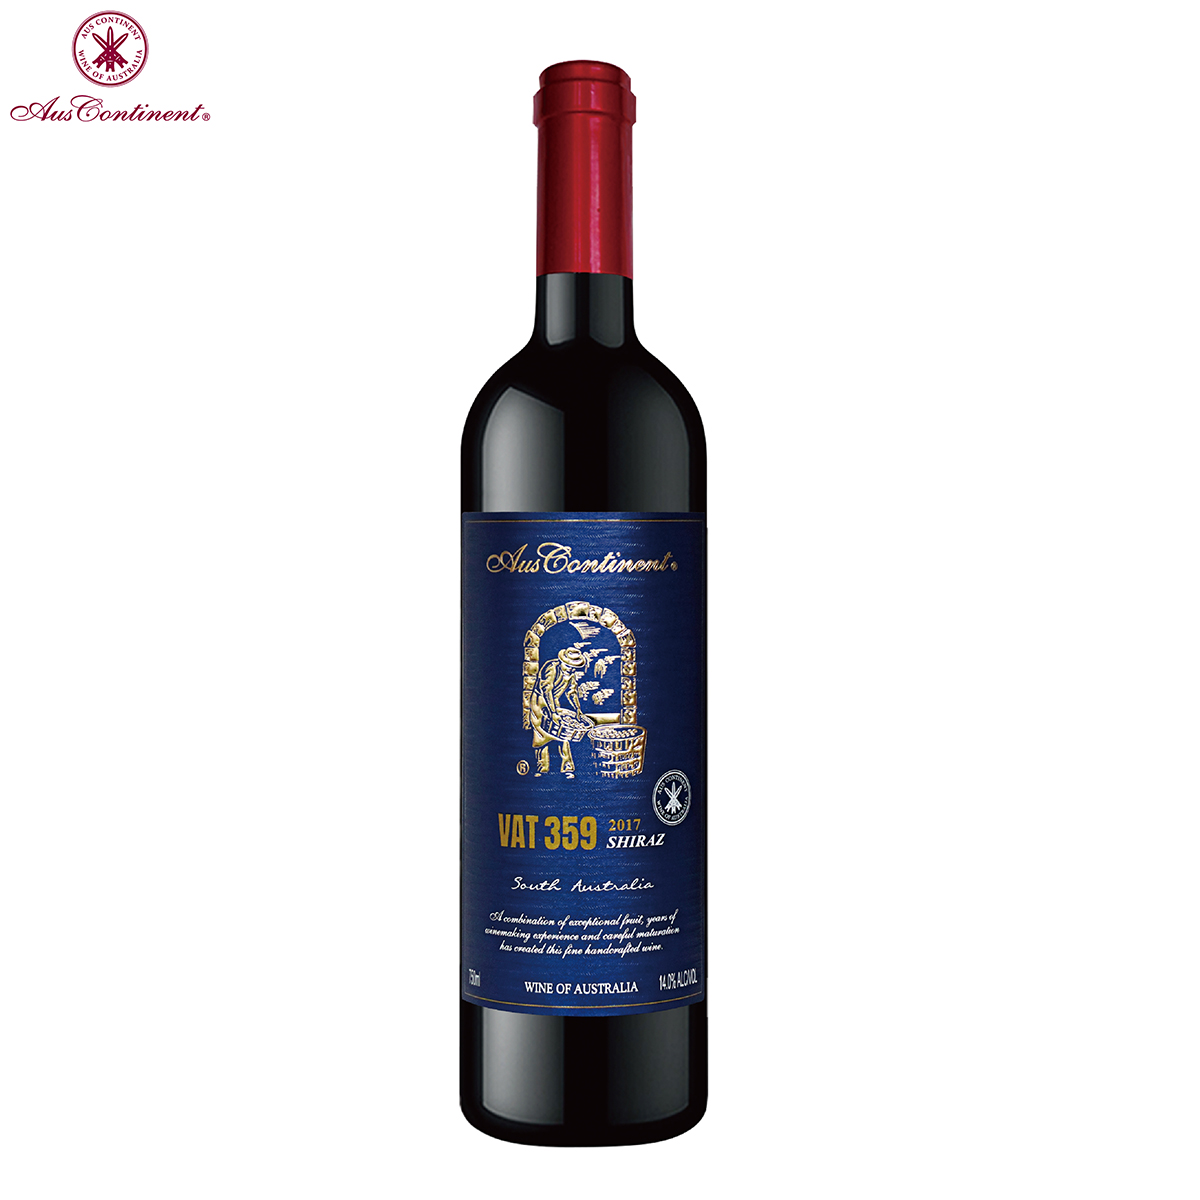 澳大利亚南澳产区澳洲大陆酒庄西拉VAT 359 干红葡萄酒红酒